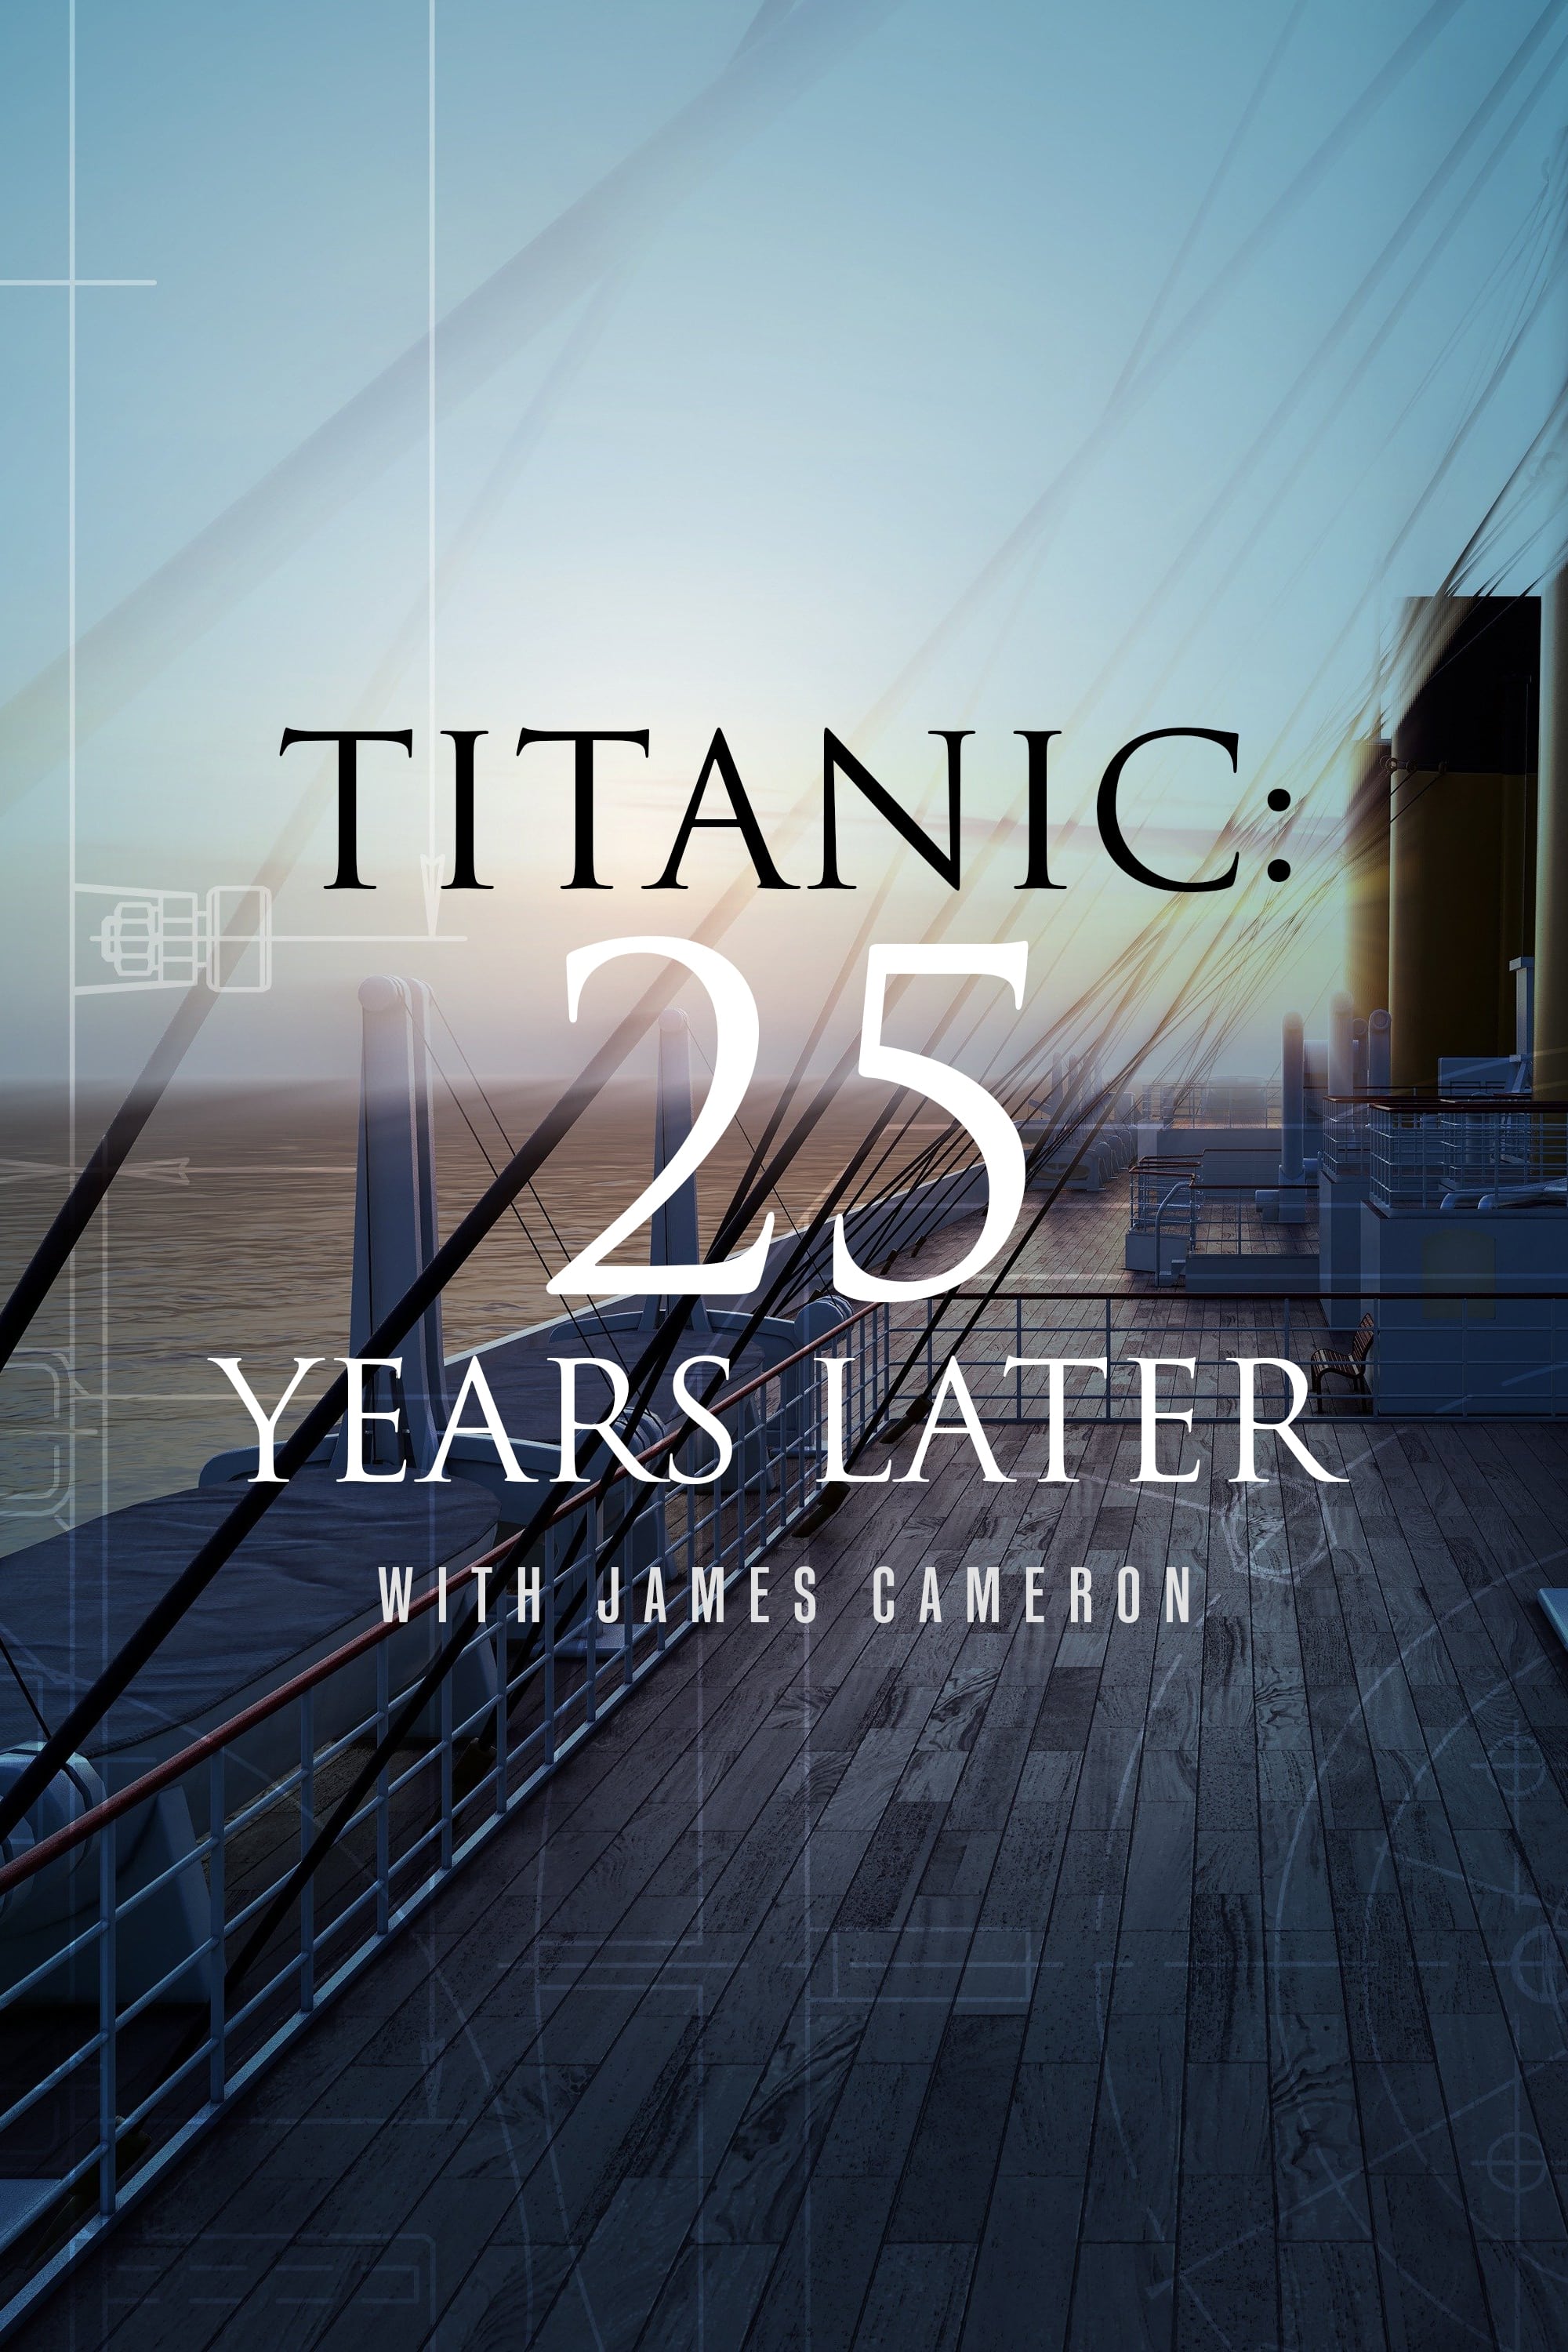 Titanic: 25 Anos Depois com James Cameron